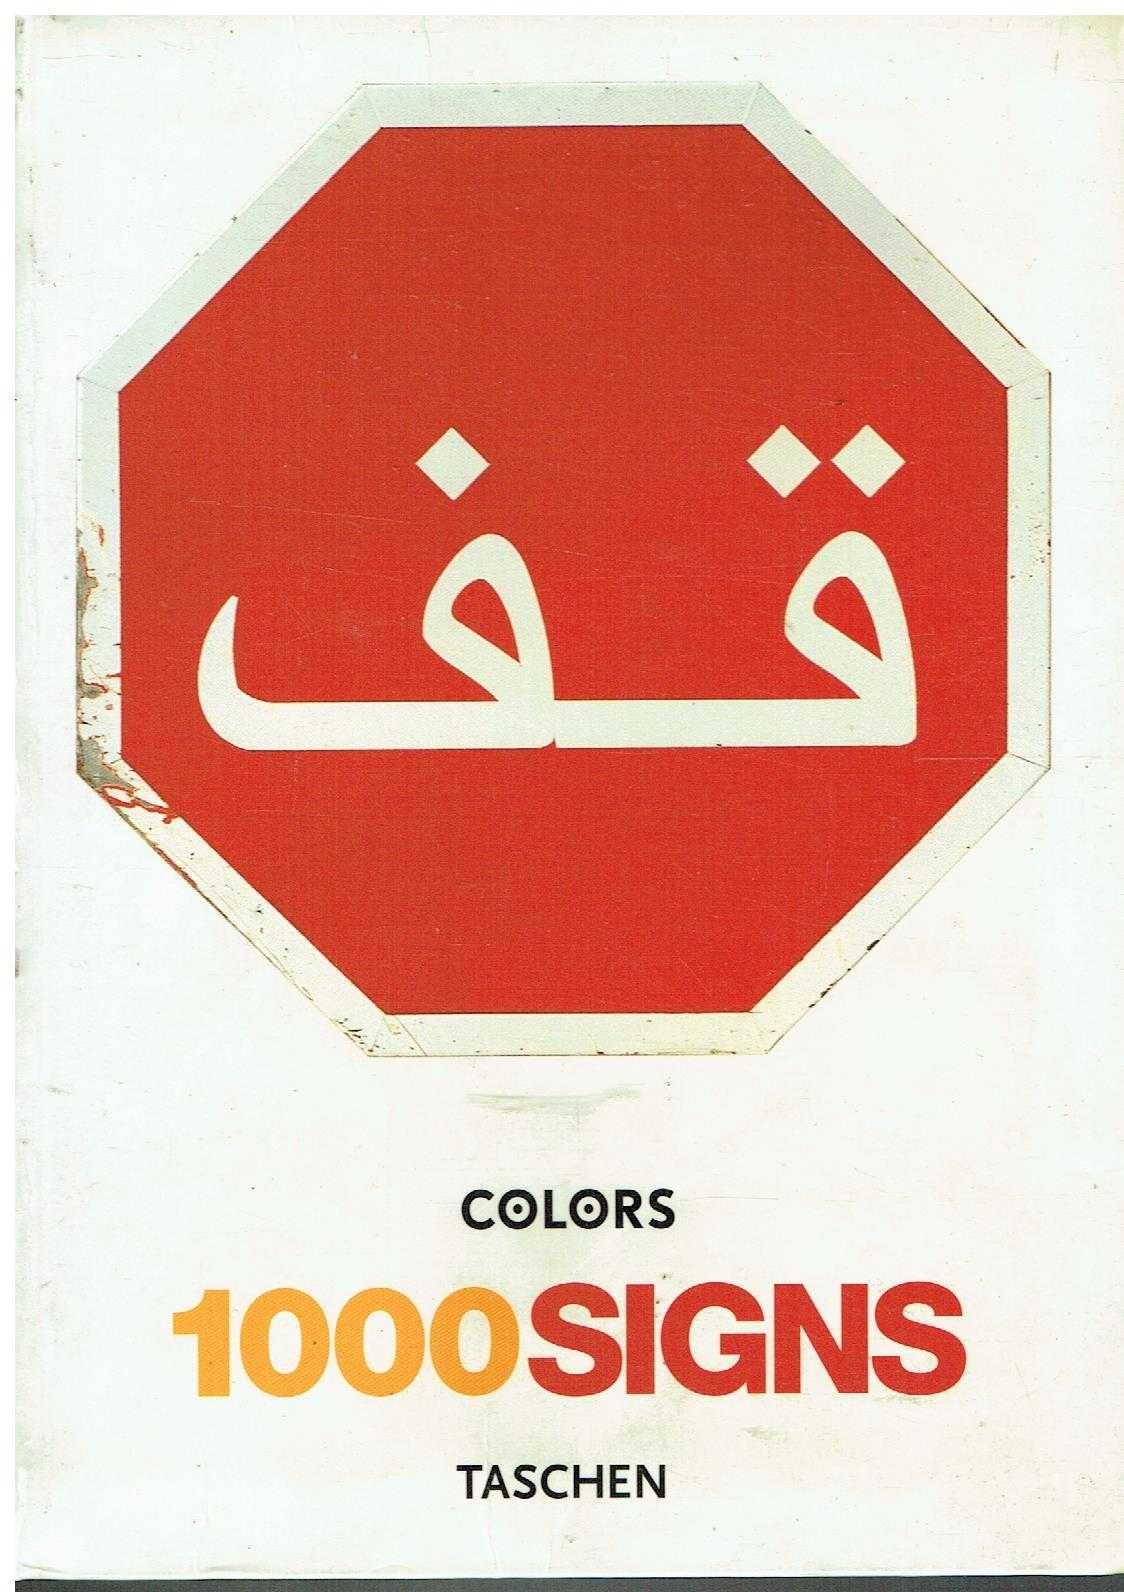 6721

.1000 Signs
editor: TASCHEN